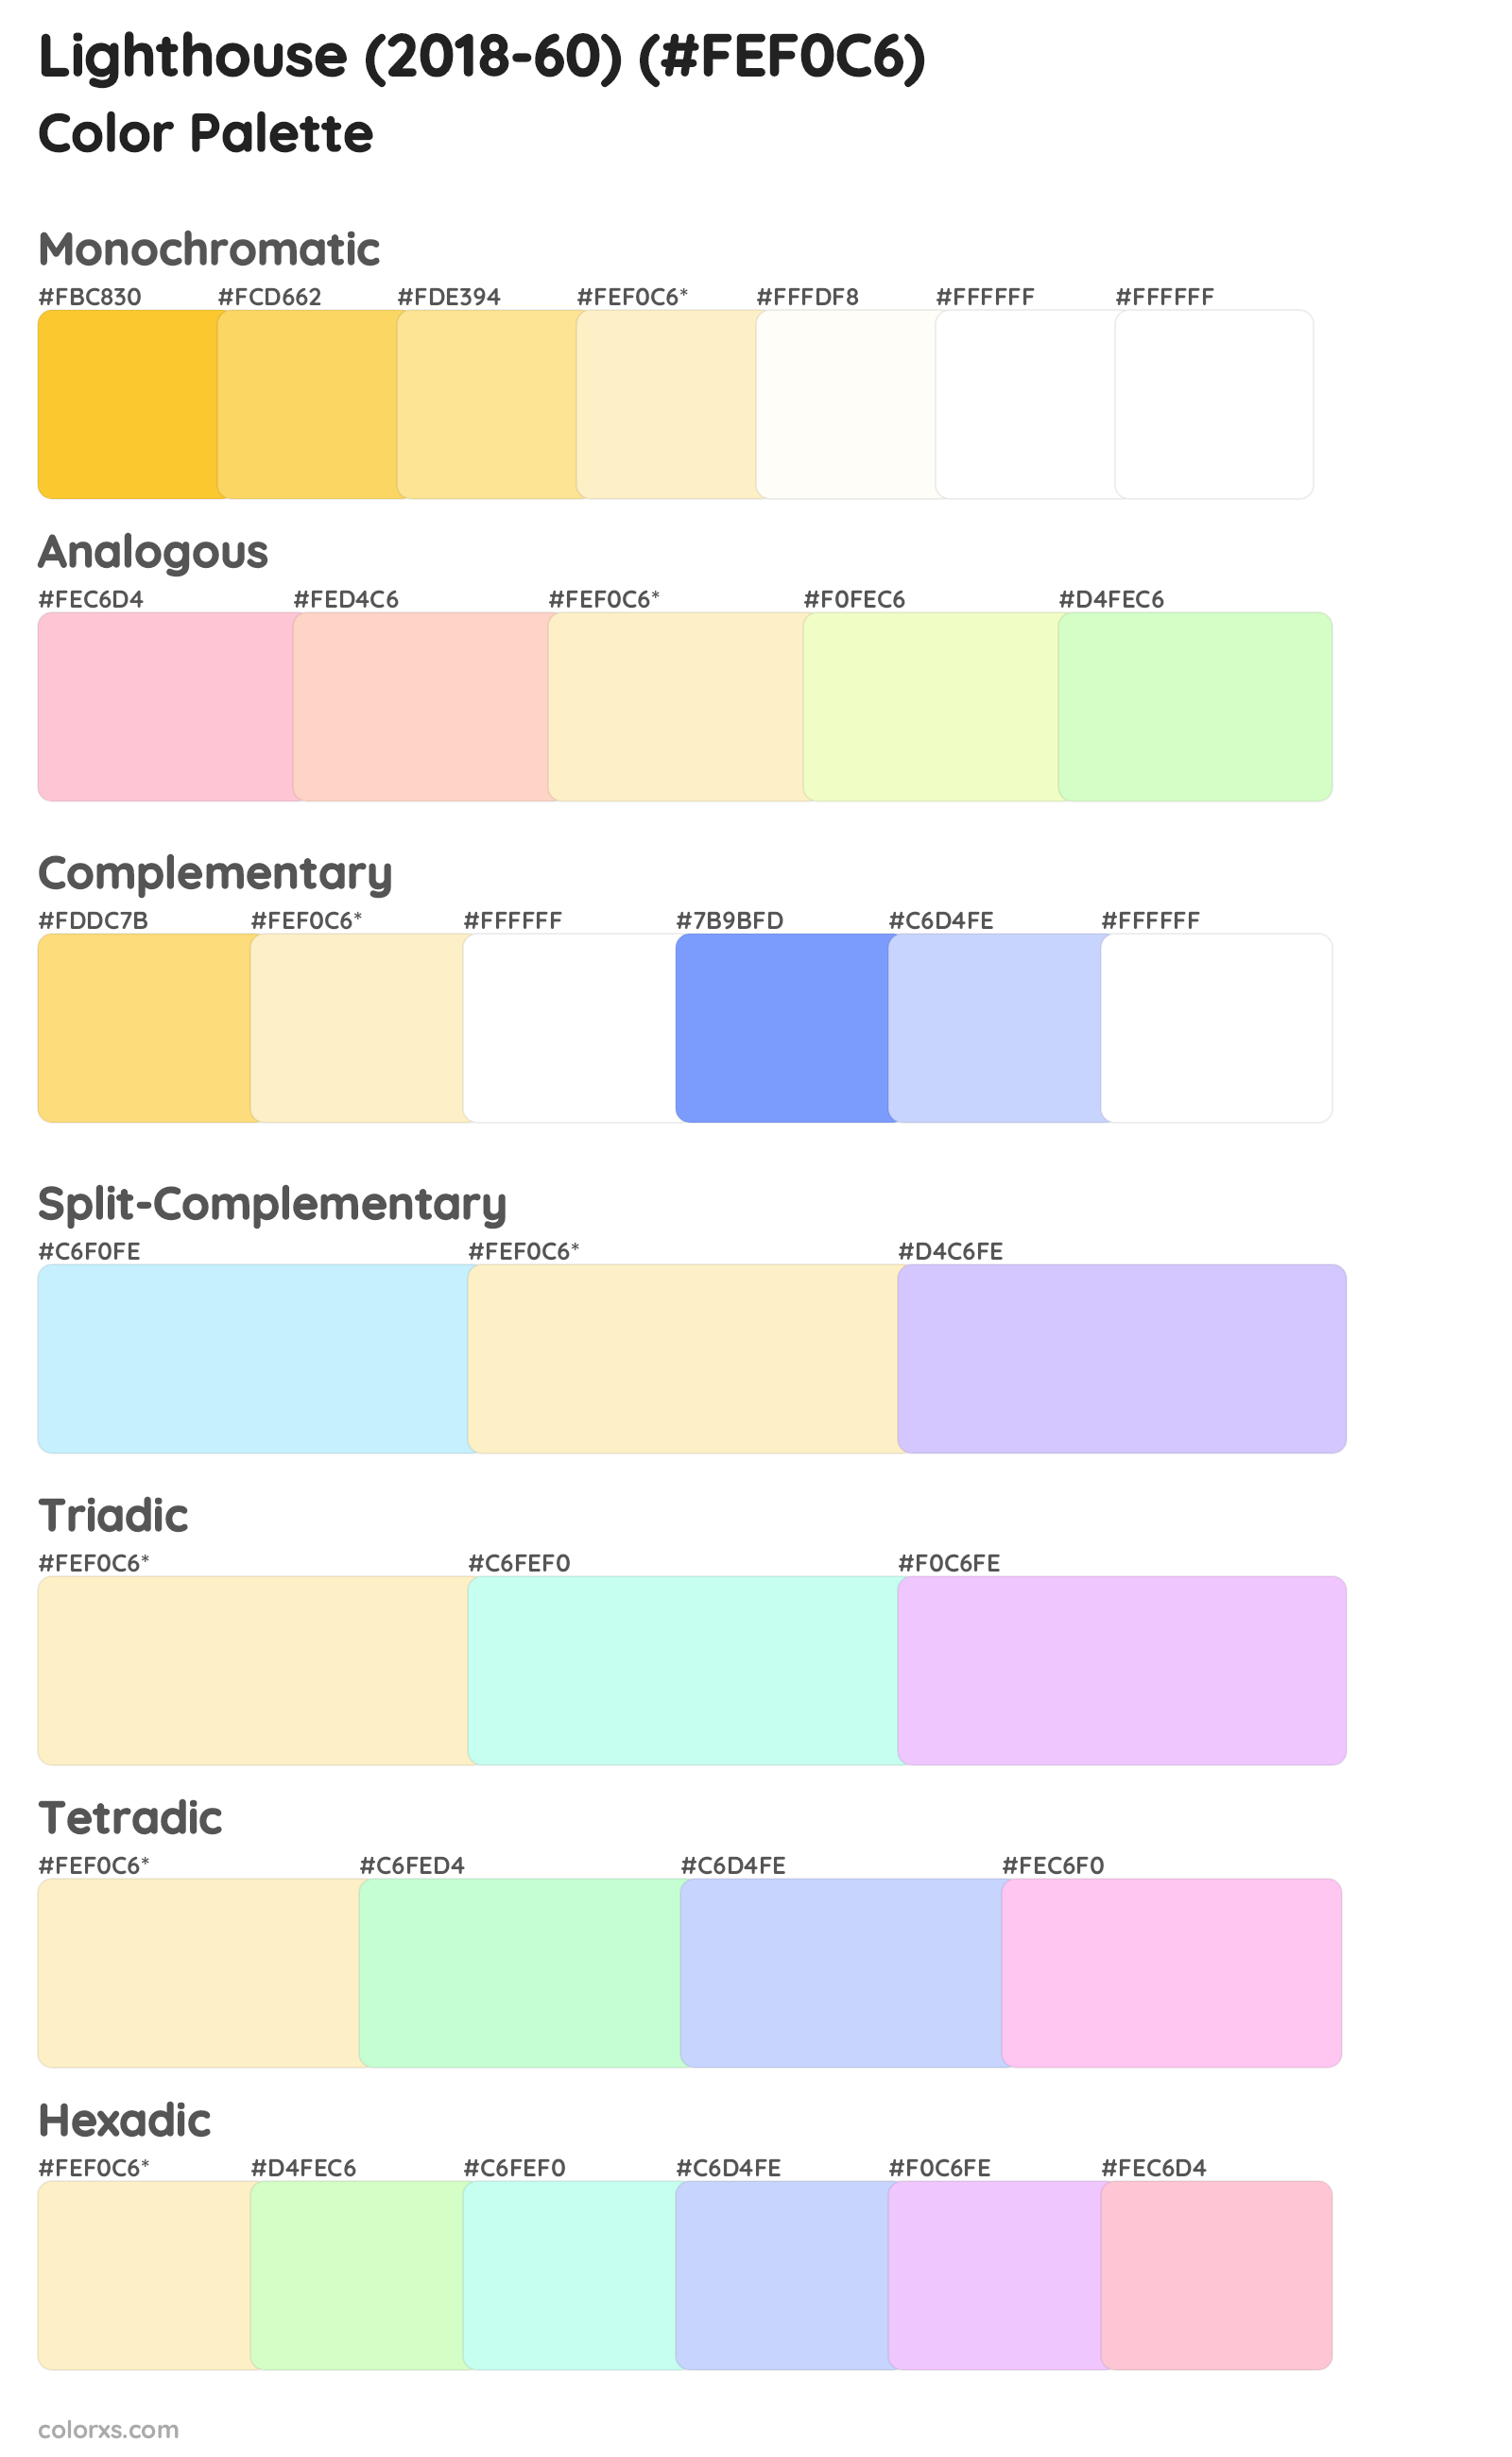 Lighthouse (2018-60) Color Scheme Palettes